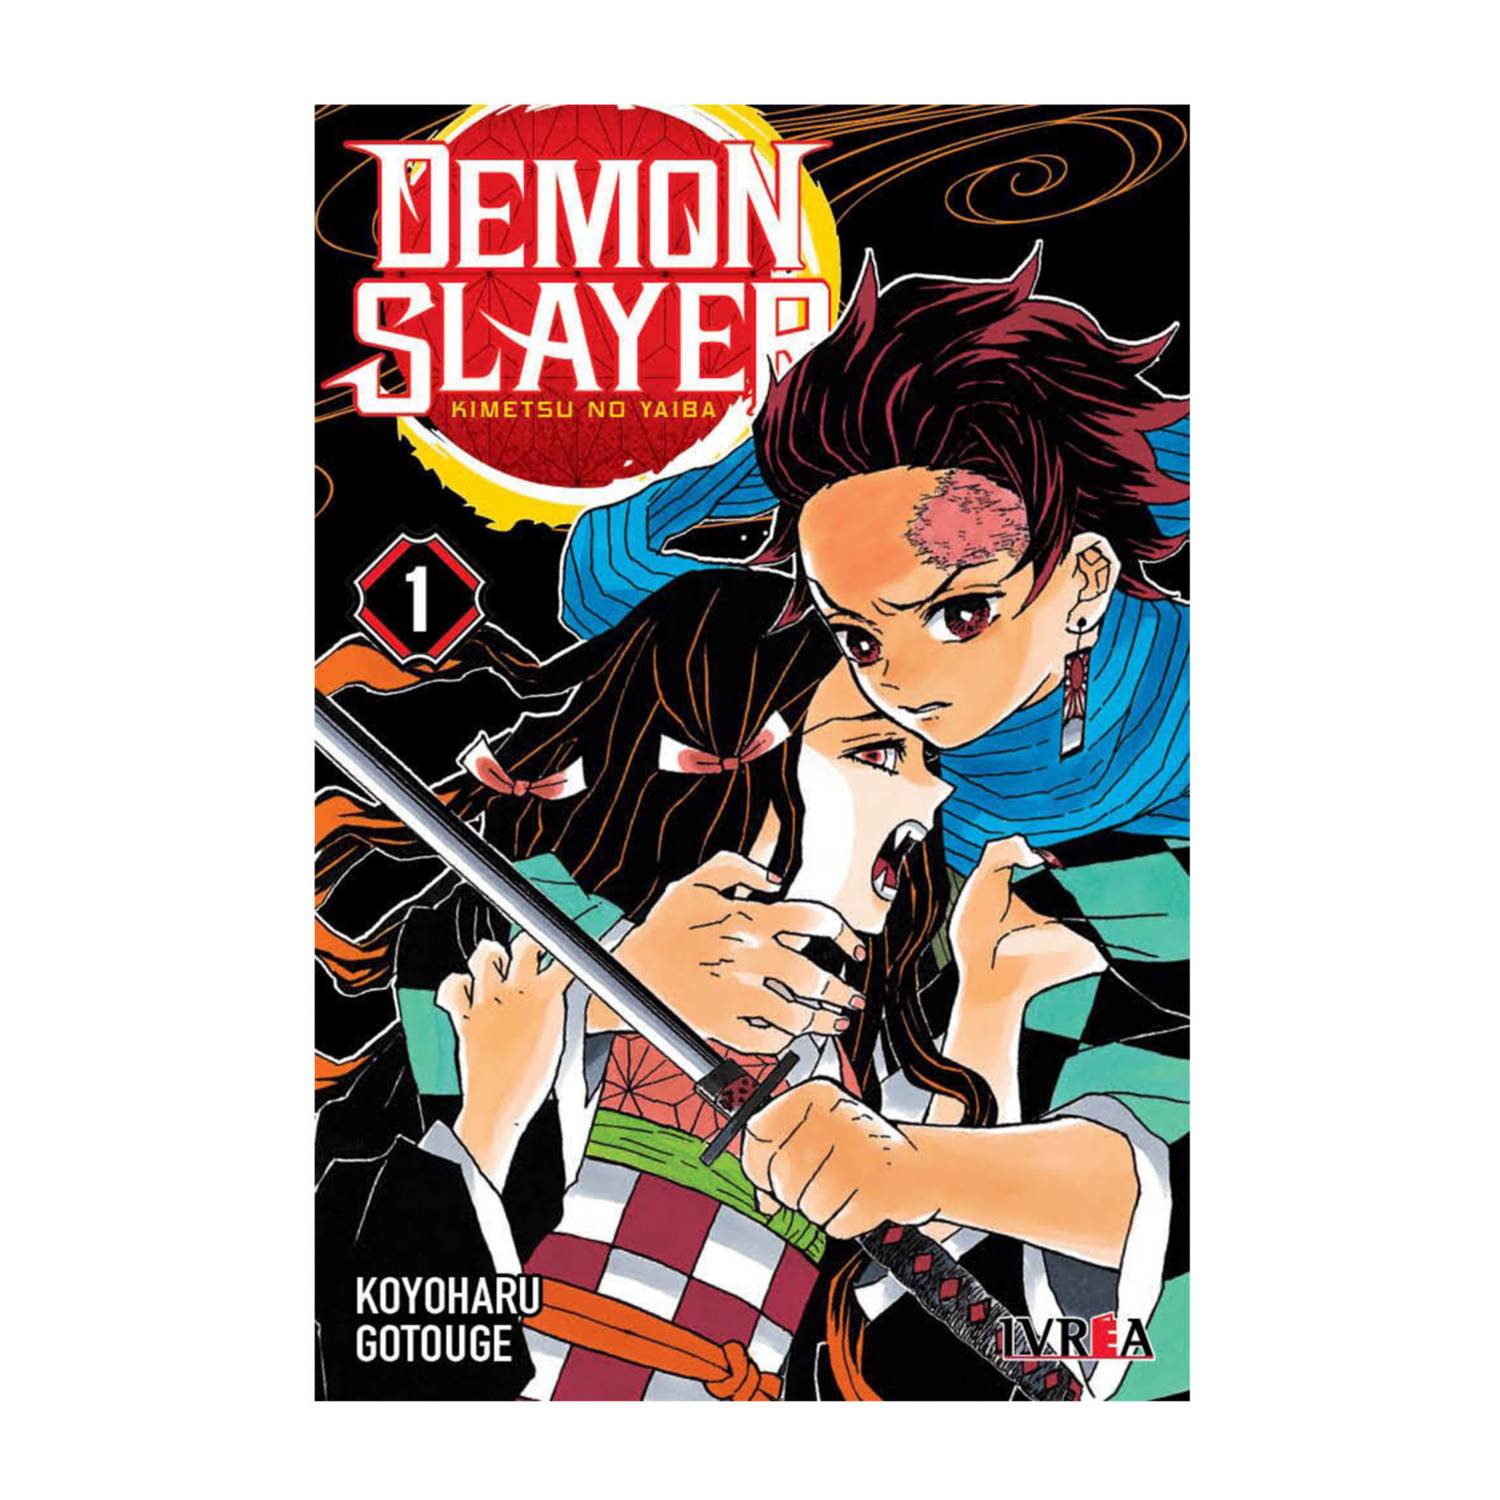 Demon slayer manga kimetsu no yaiba tomo 01 original español